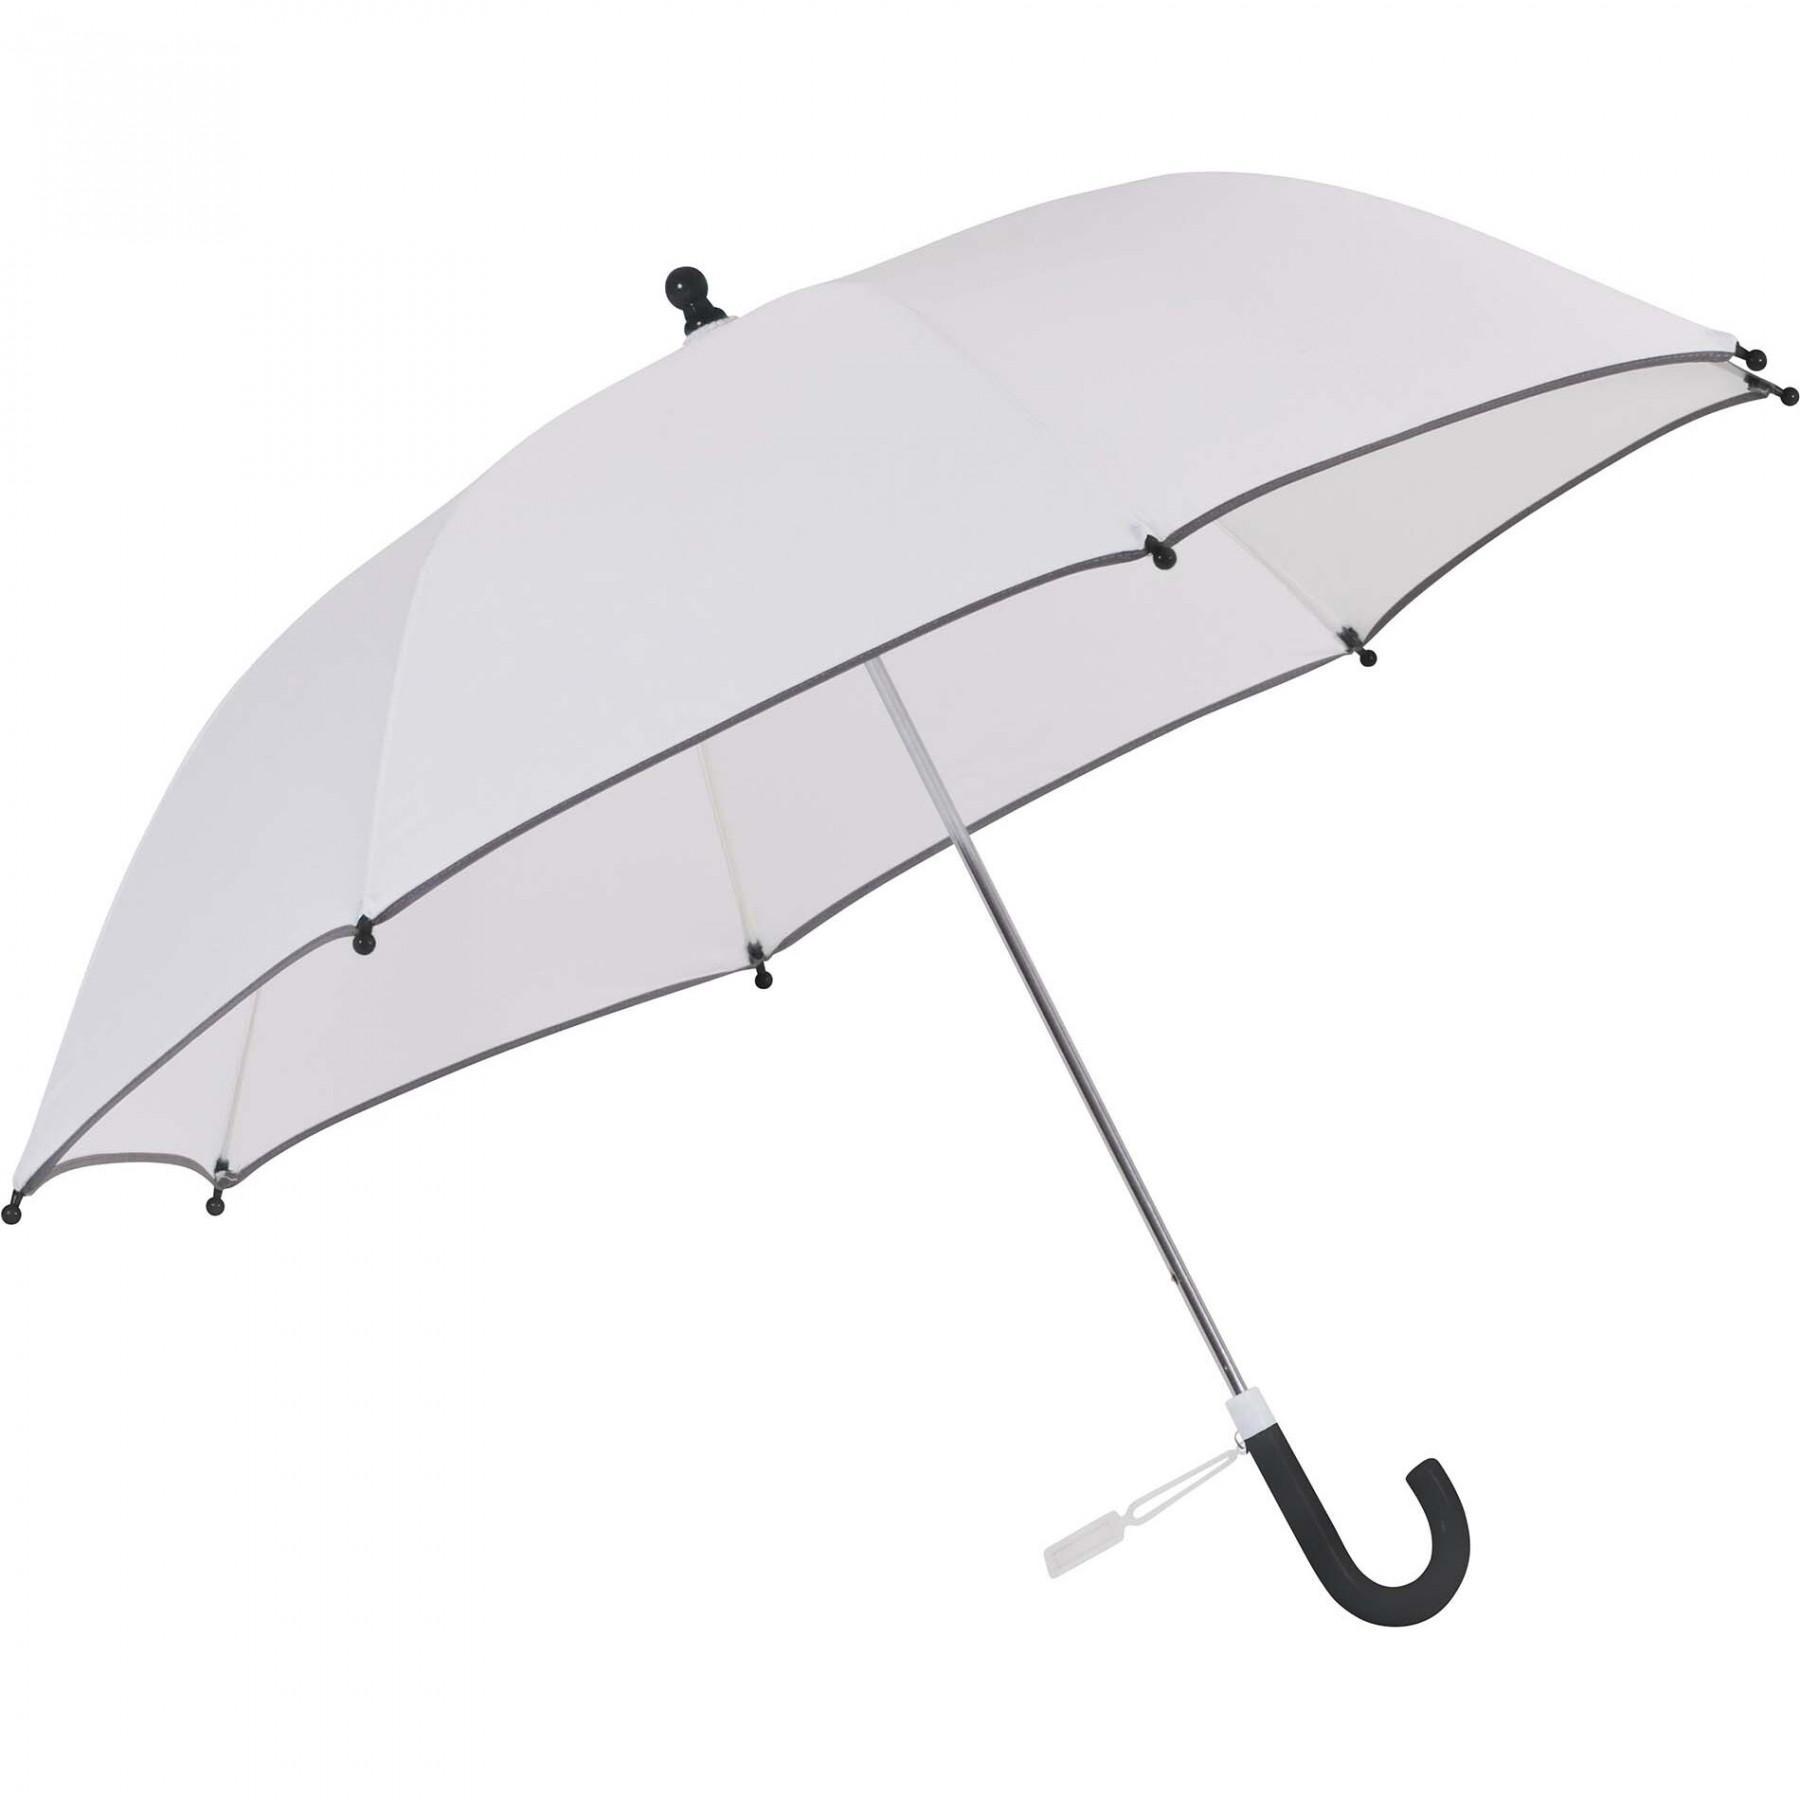 Regenschirm für Kinder Kimood